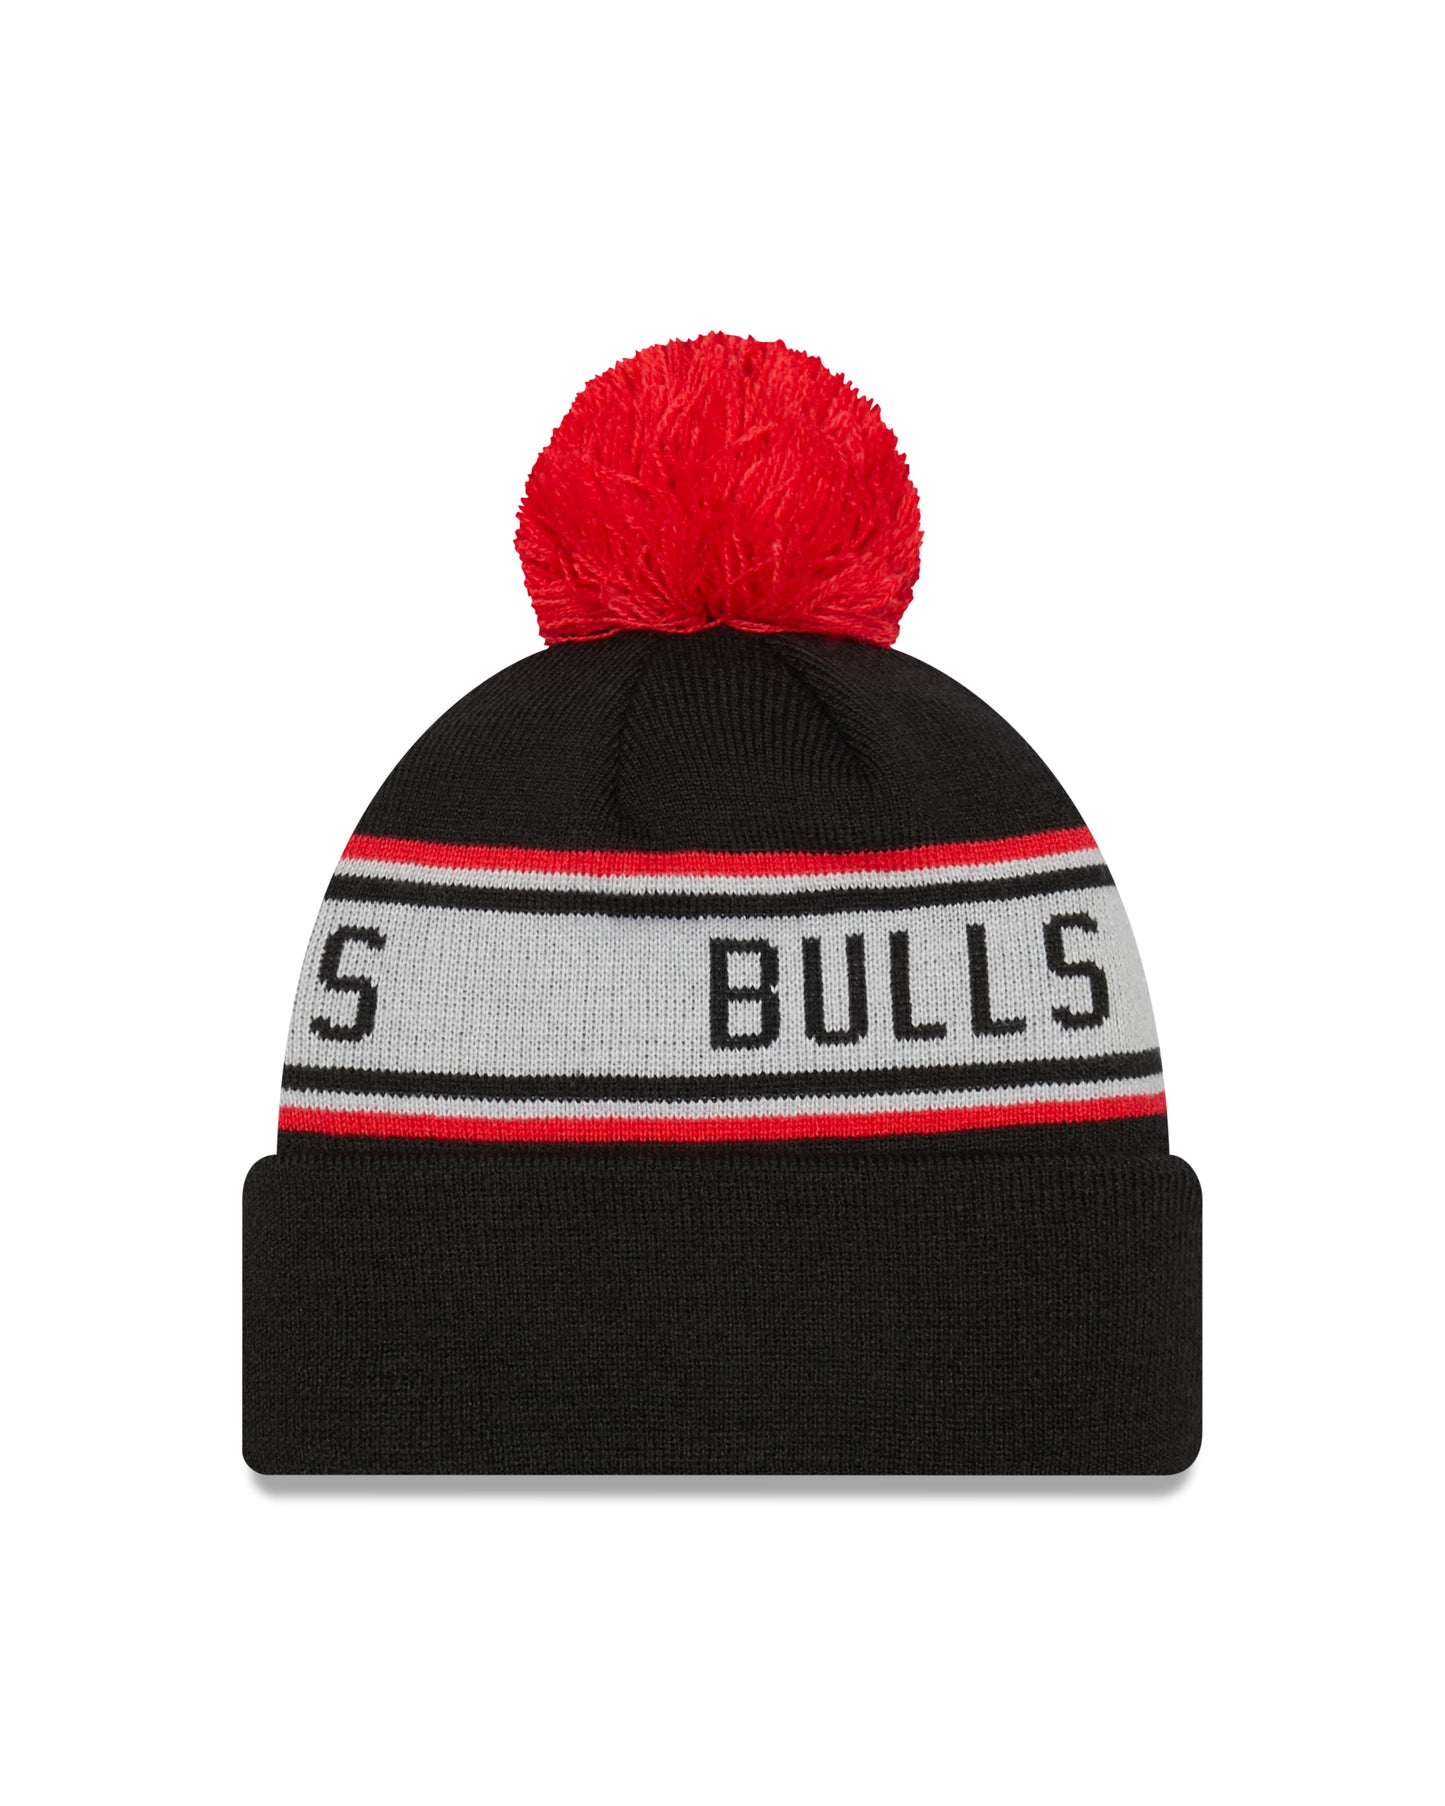 Chicago Bulls New Era Black Repeat Cuffed Pom Knit Hat